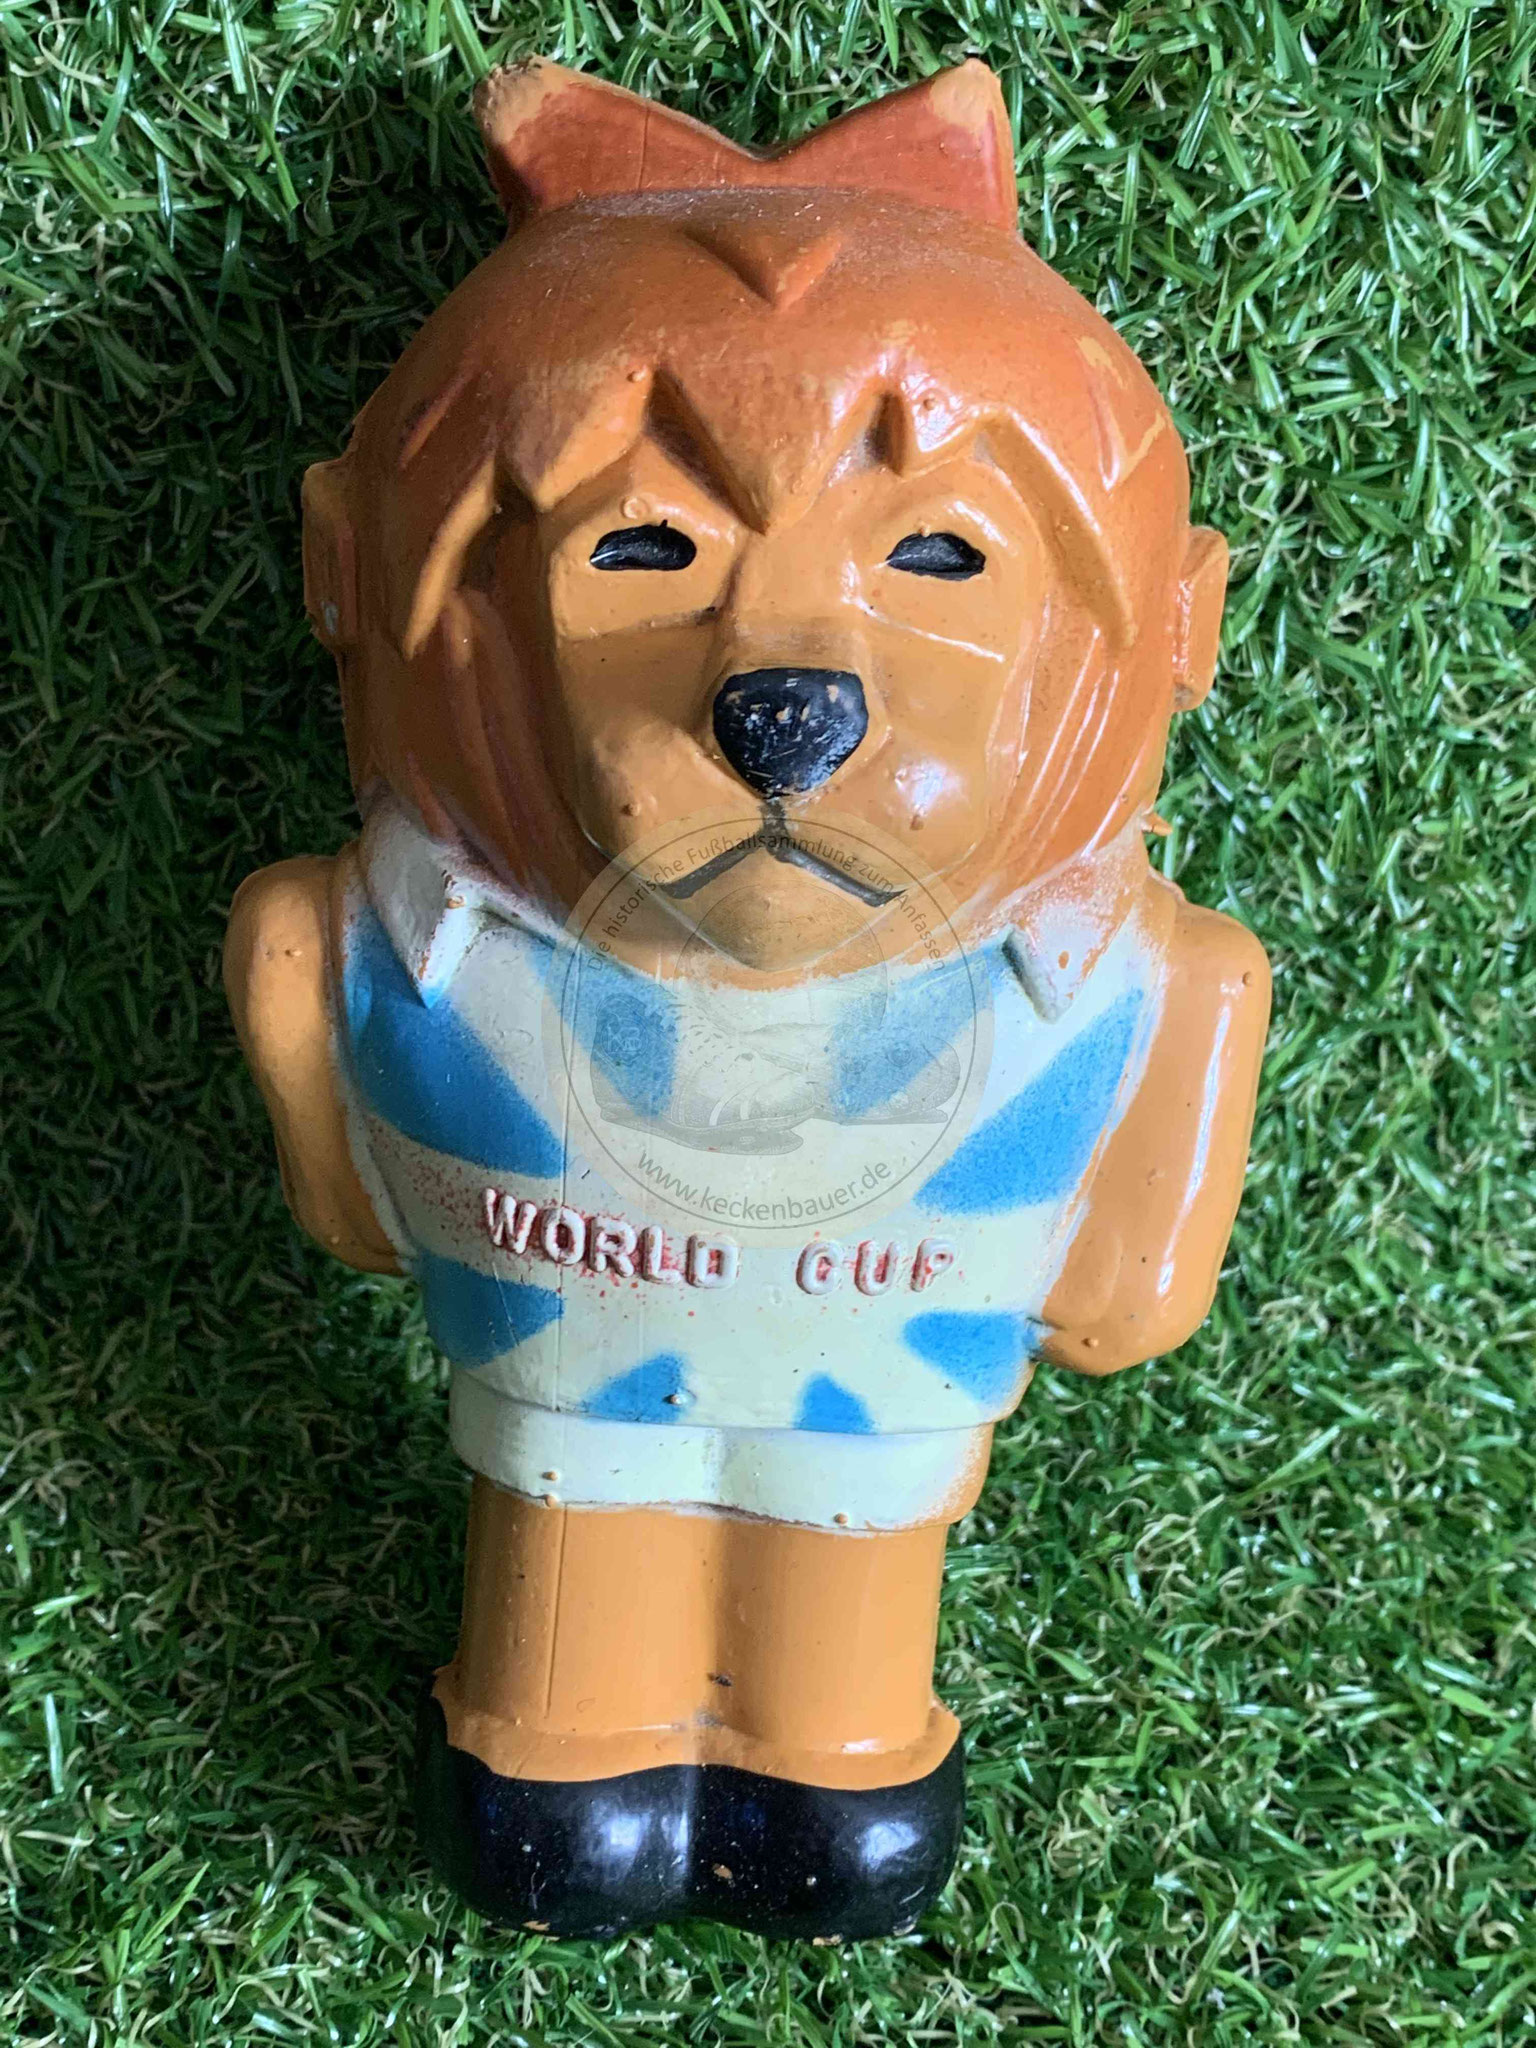 Willie World Cup von der WM 1966 in England, das erste von der FIFA lizensierte Maskottchen 2